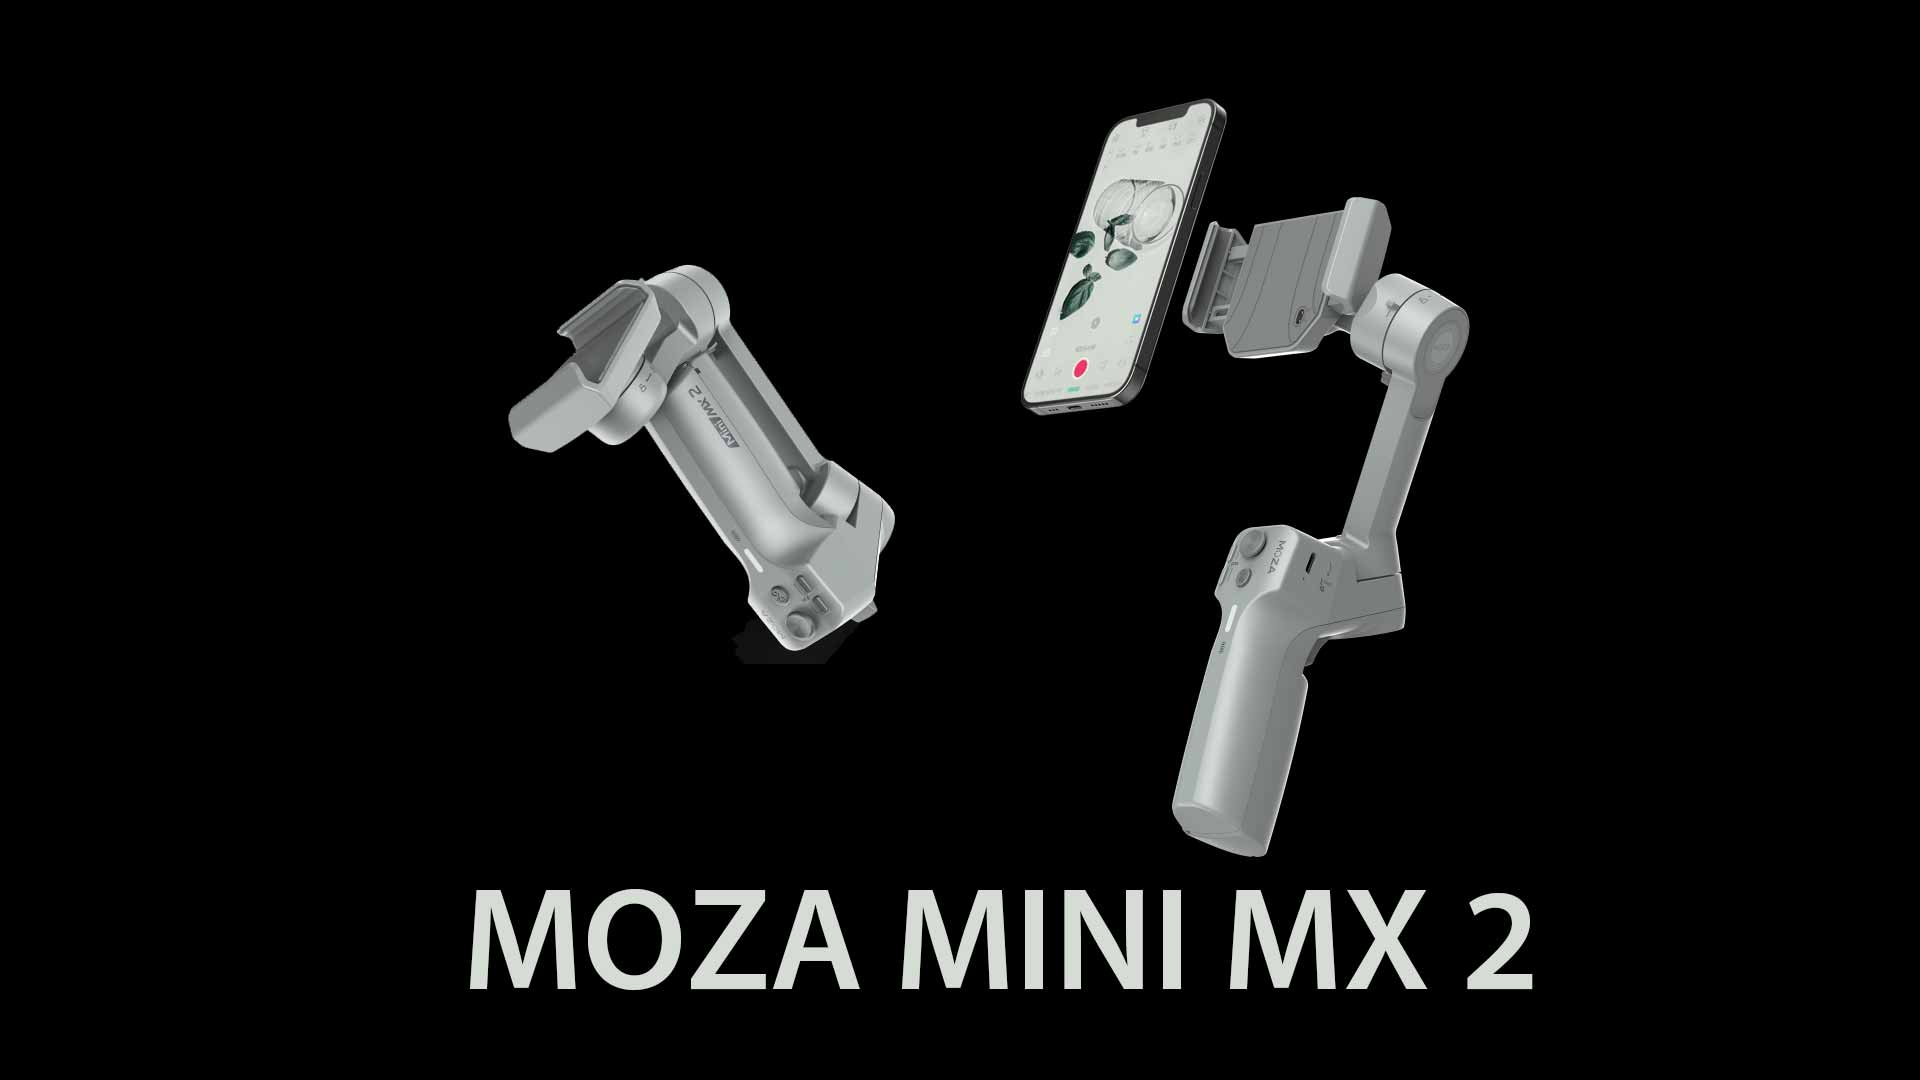 moza mini mx 2 gimbal